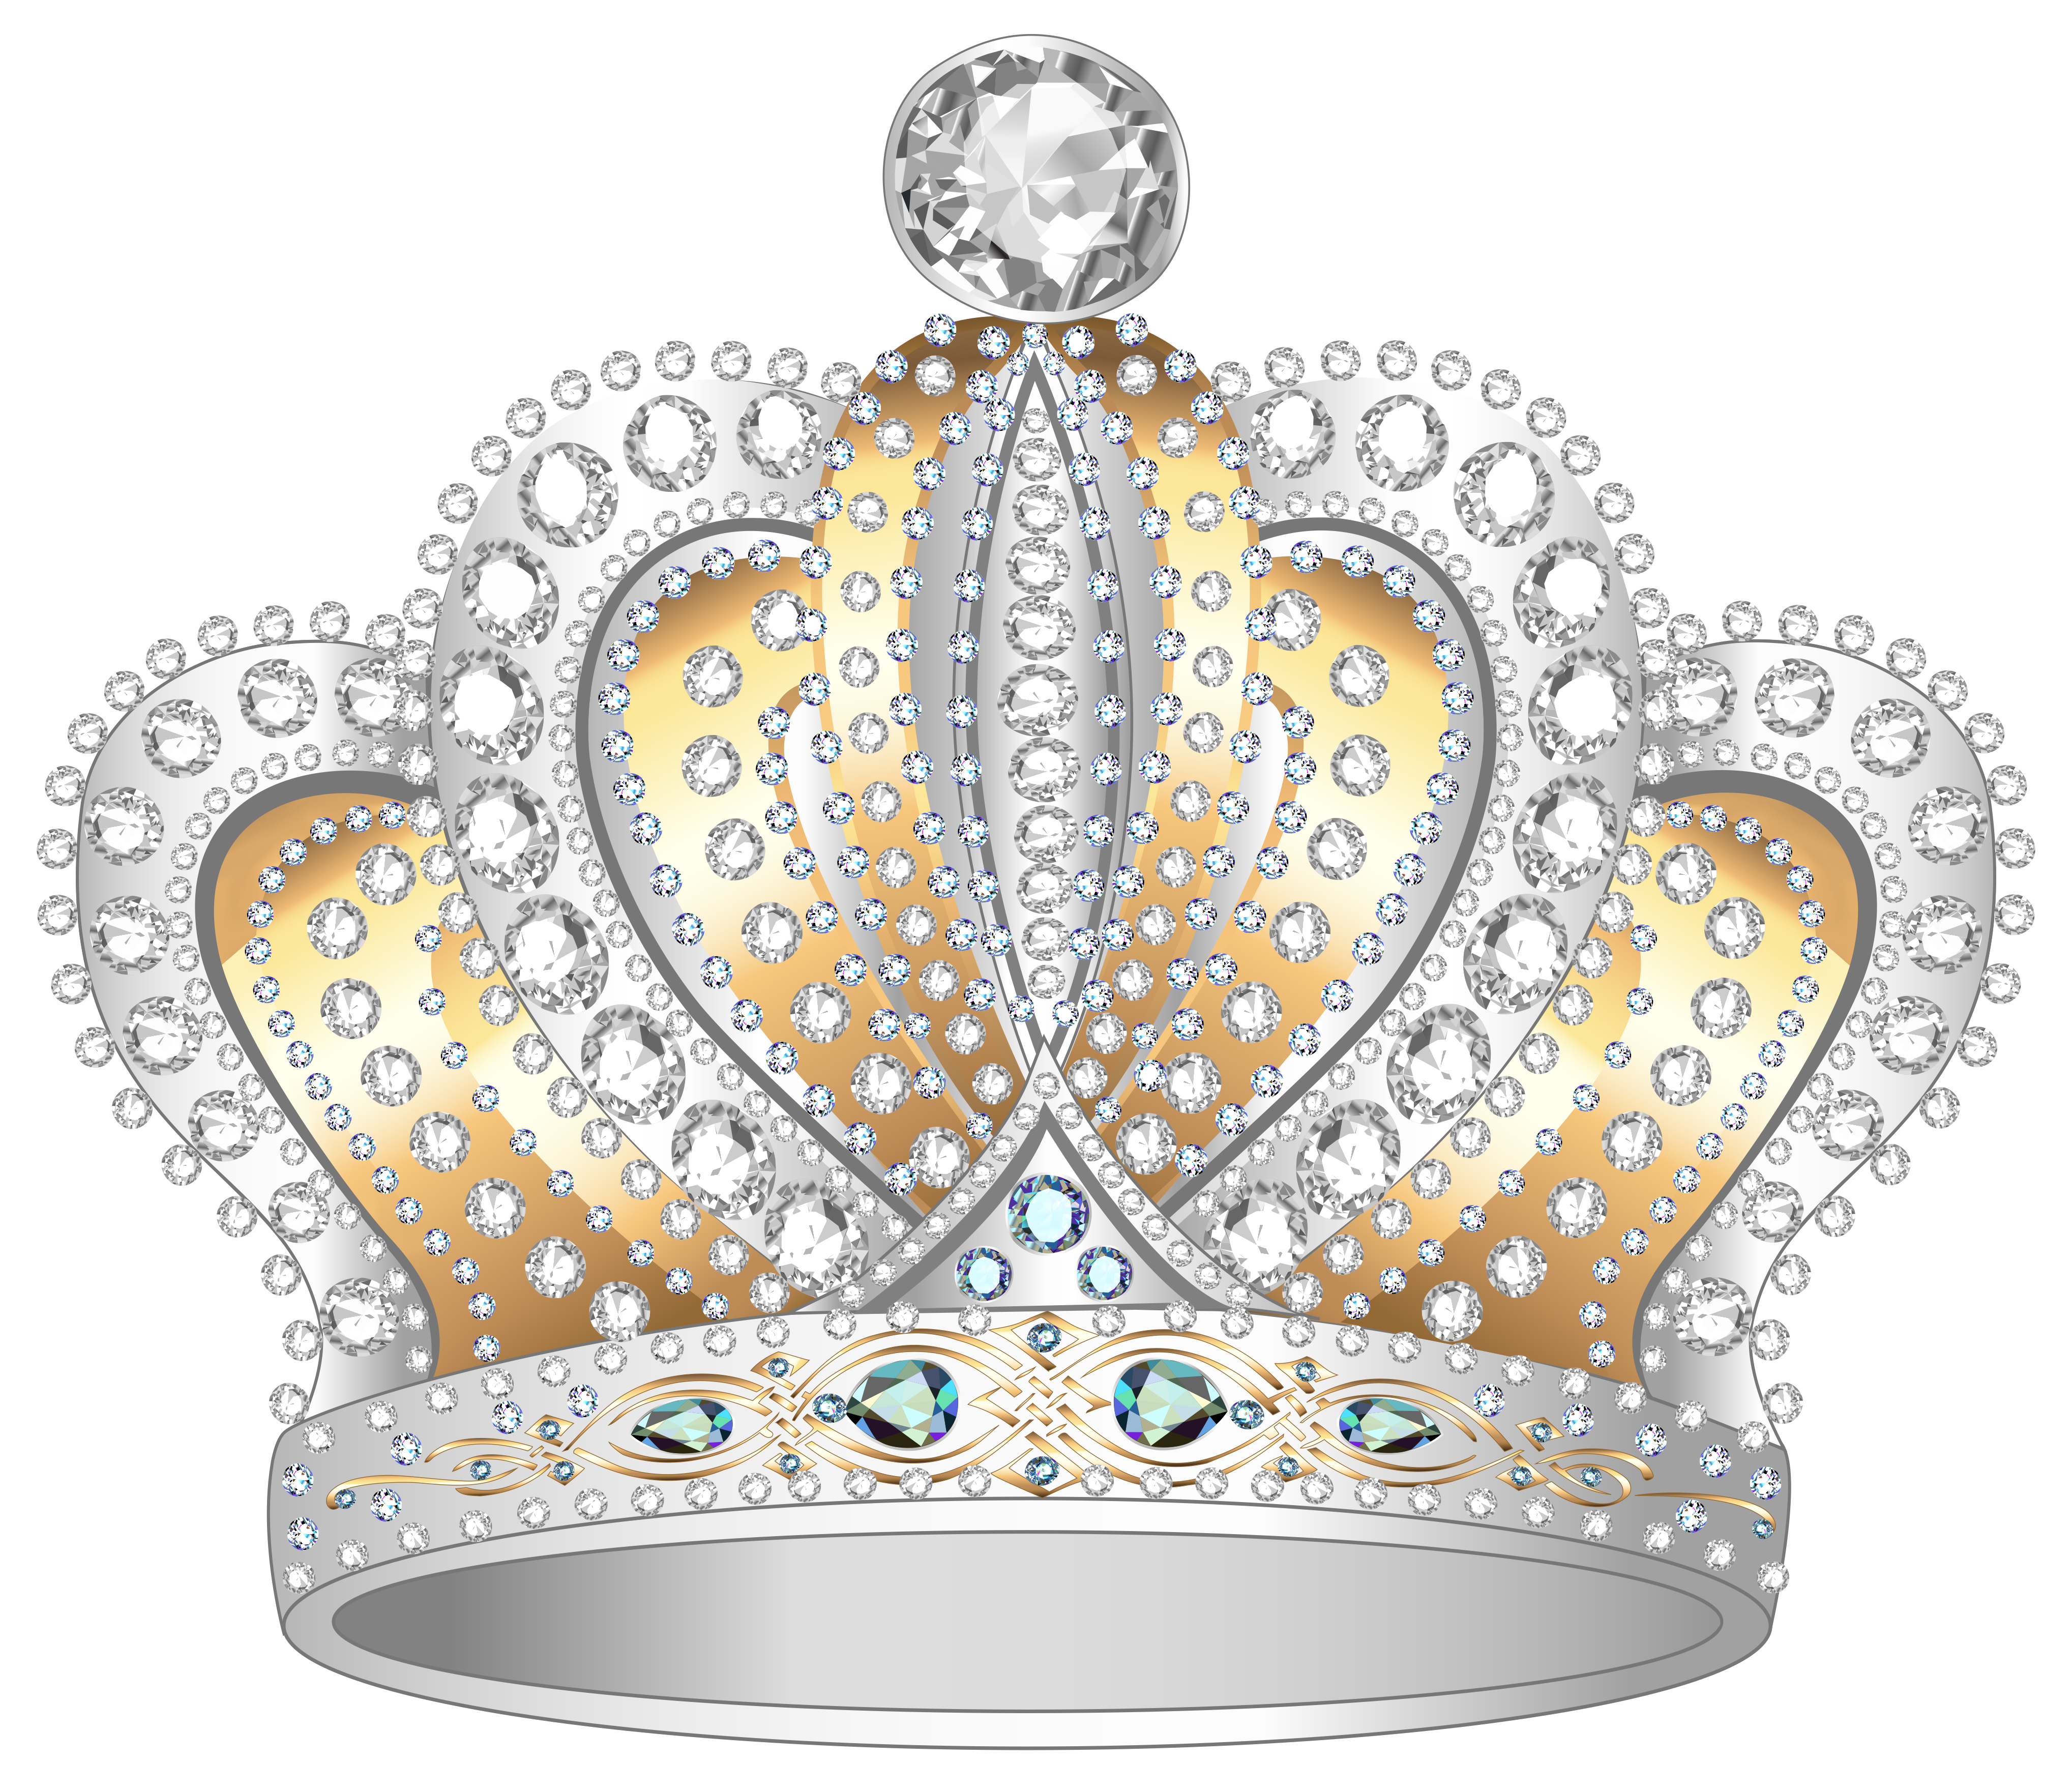 Crown Diamond Clip art - Silver Gold Diamond Crown PNG ...